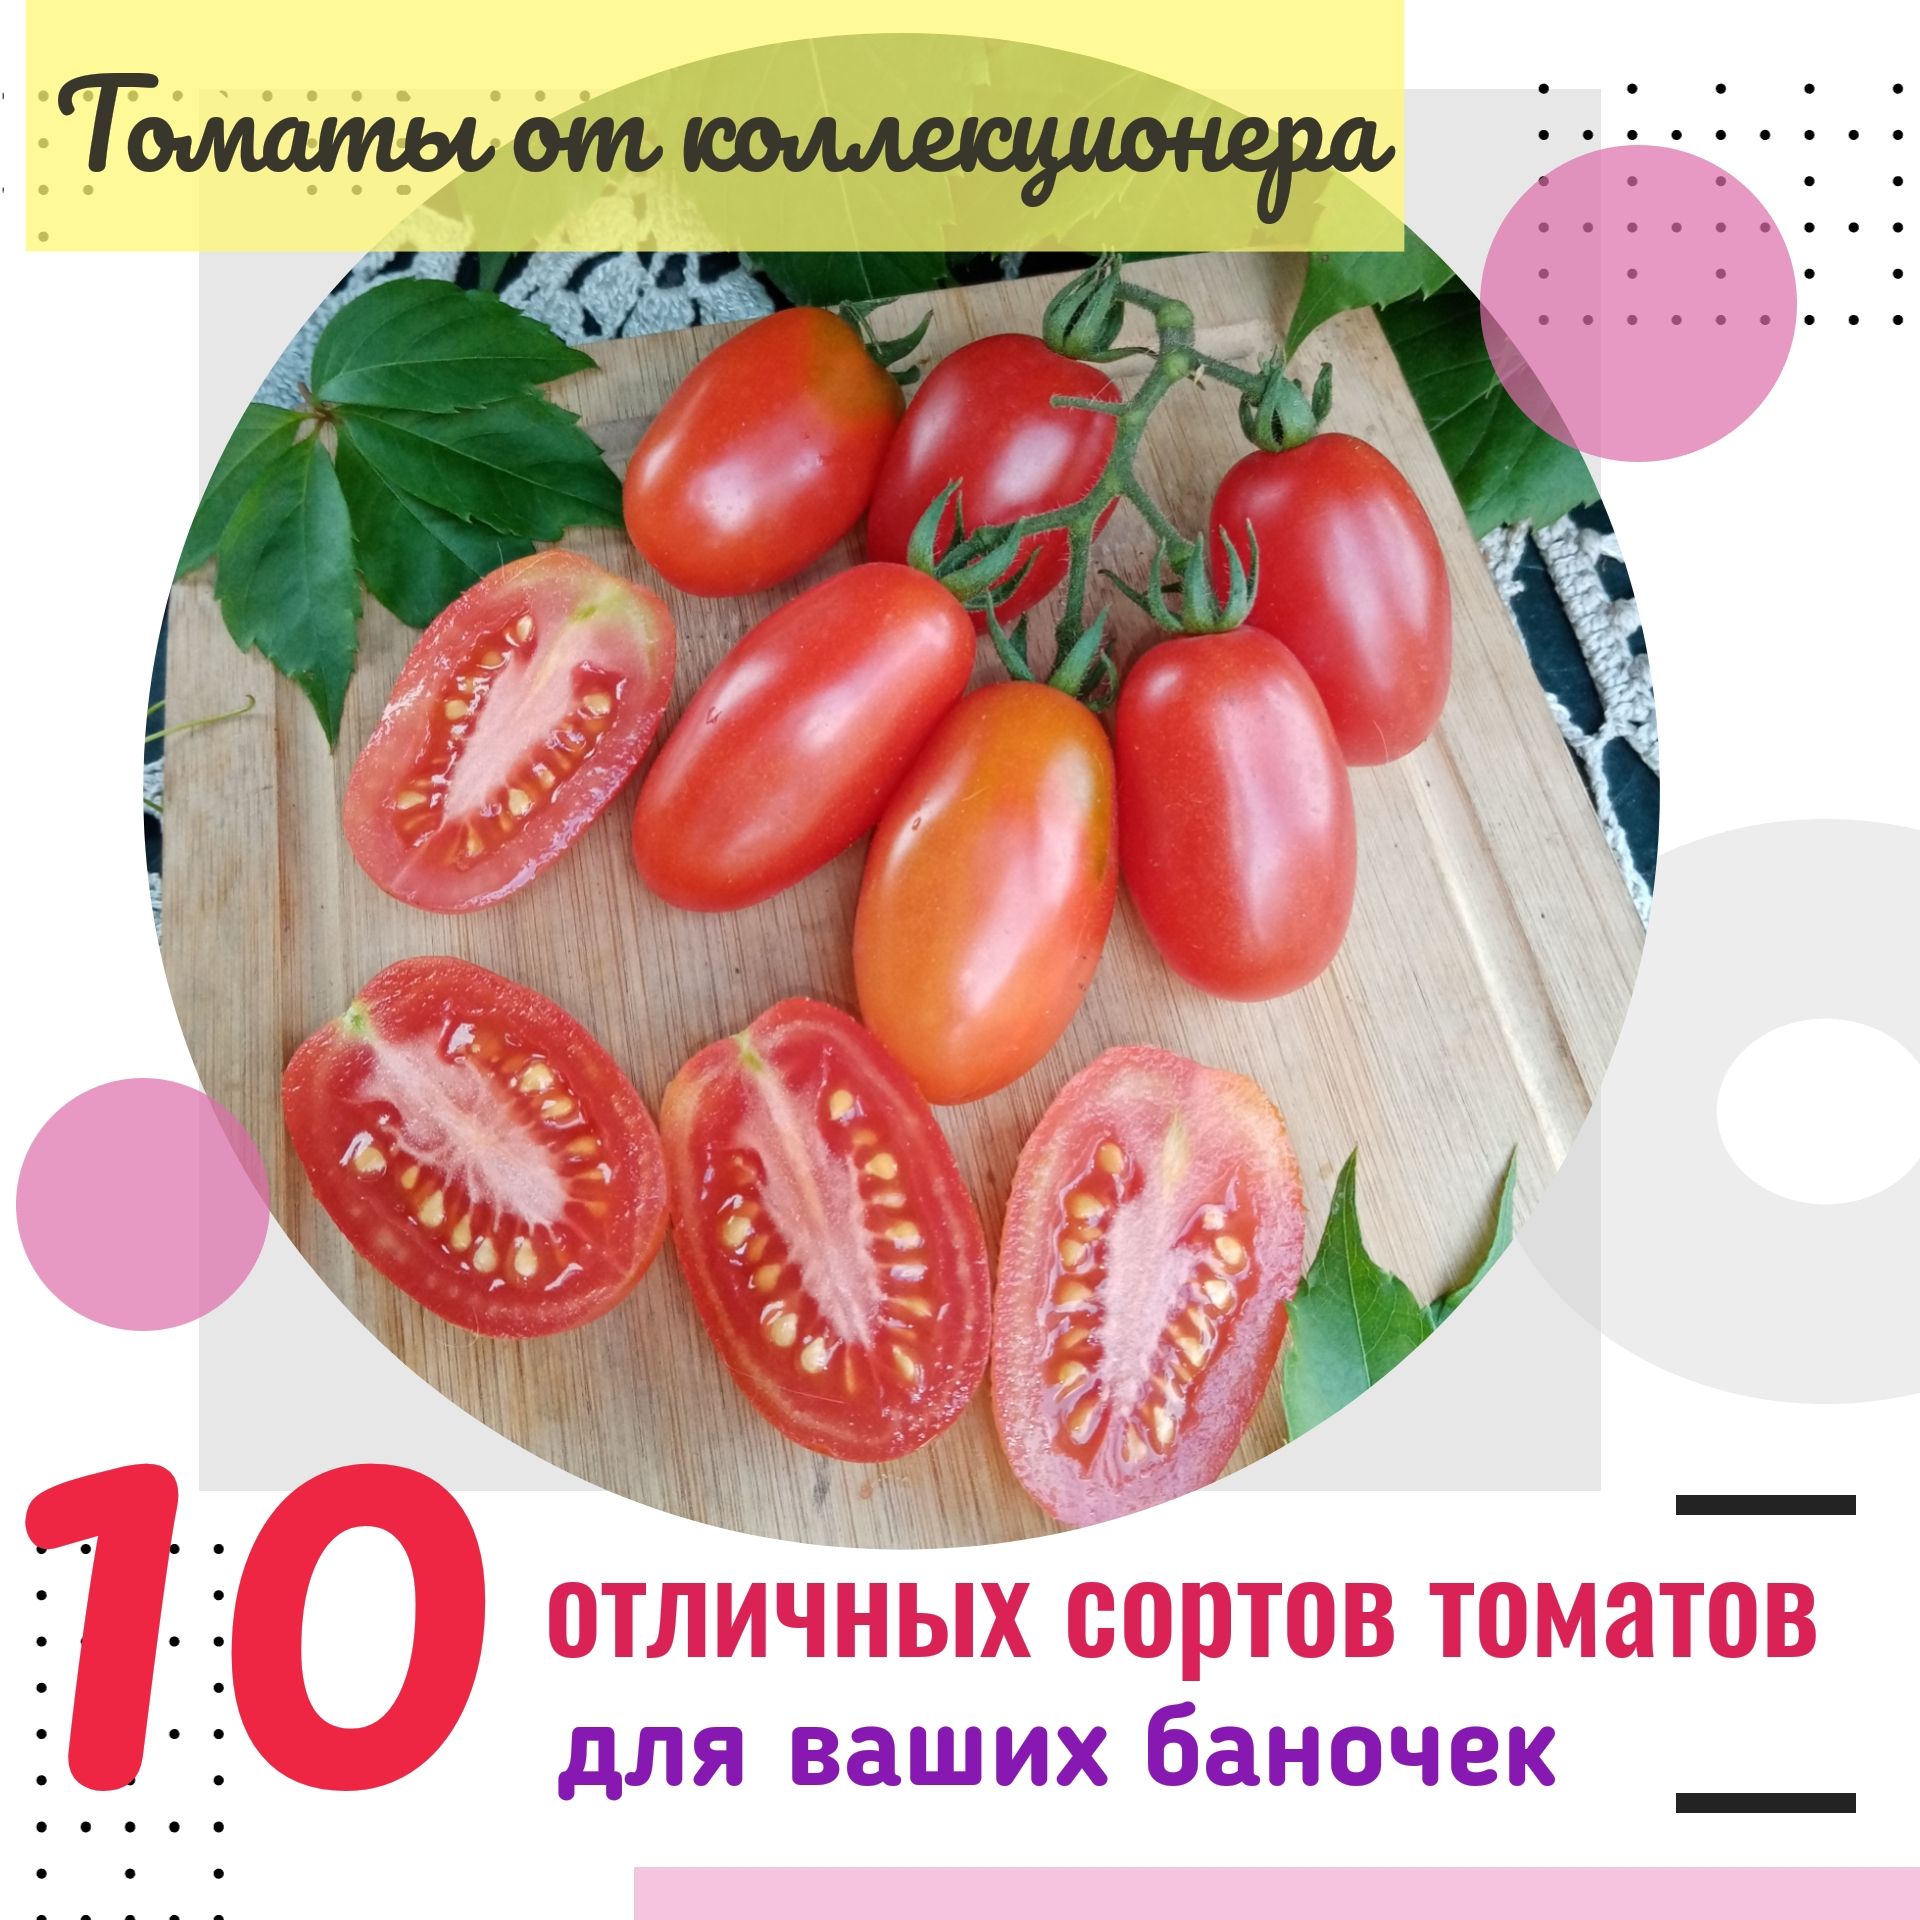 17 сортов томатов для цельноплодного консервирования - оптимальный выбор для банок